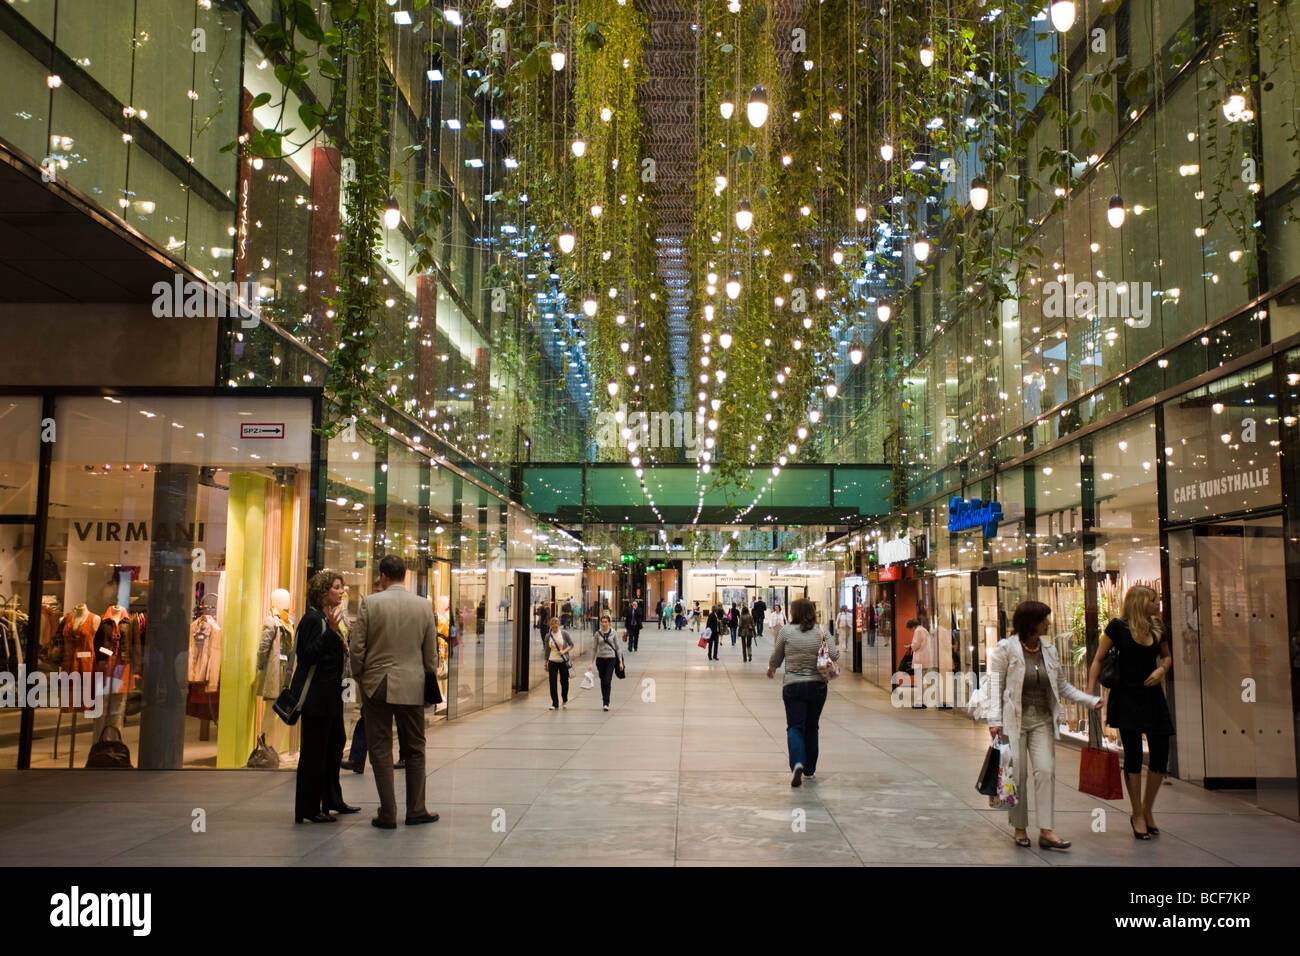 Germany, Bayern/Bavaria, Munich, Funf Hofe shopping mall Stock Photo